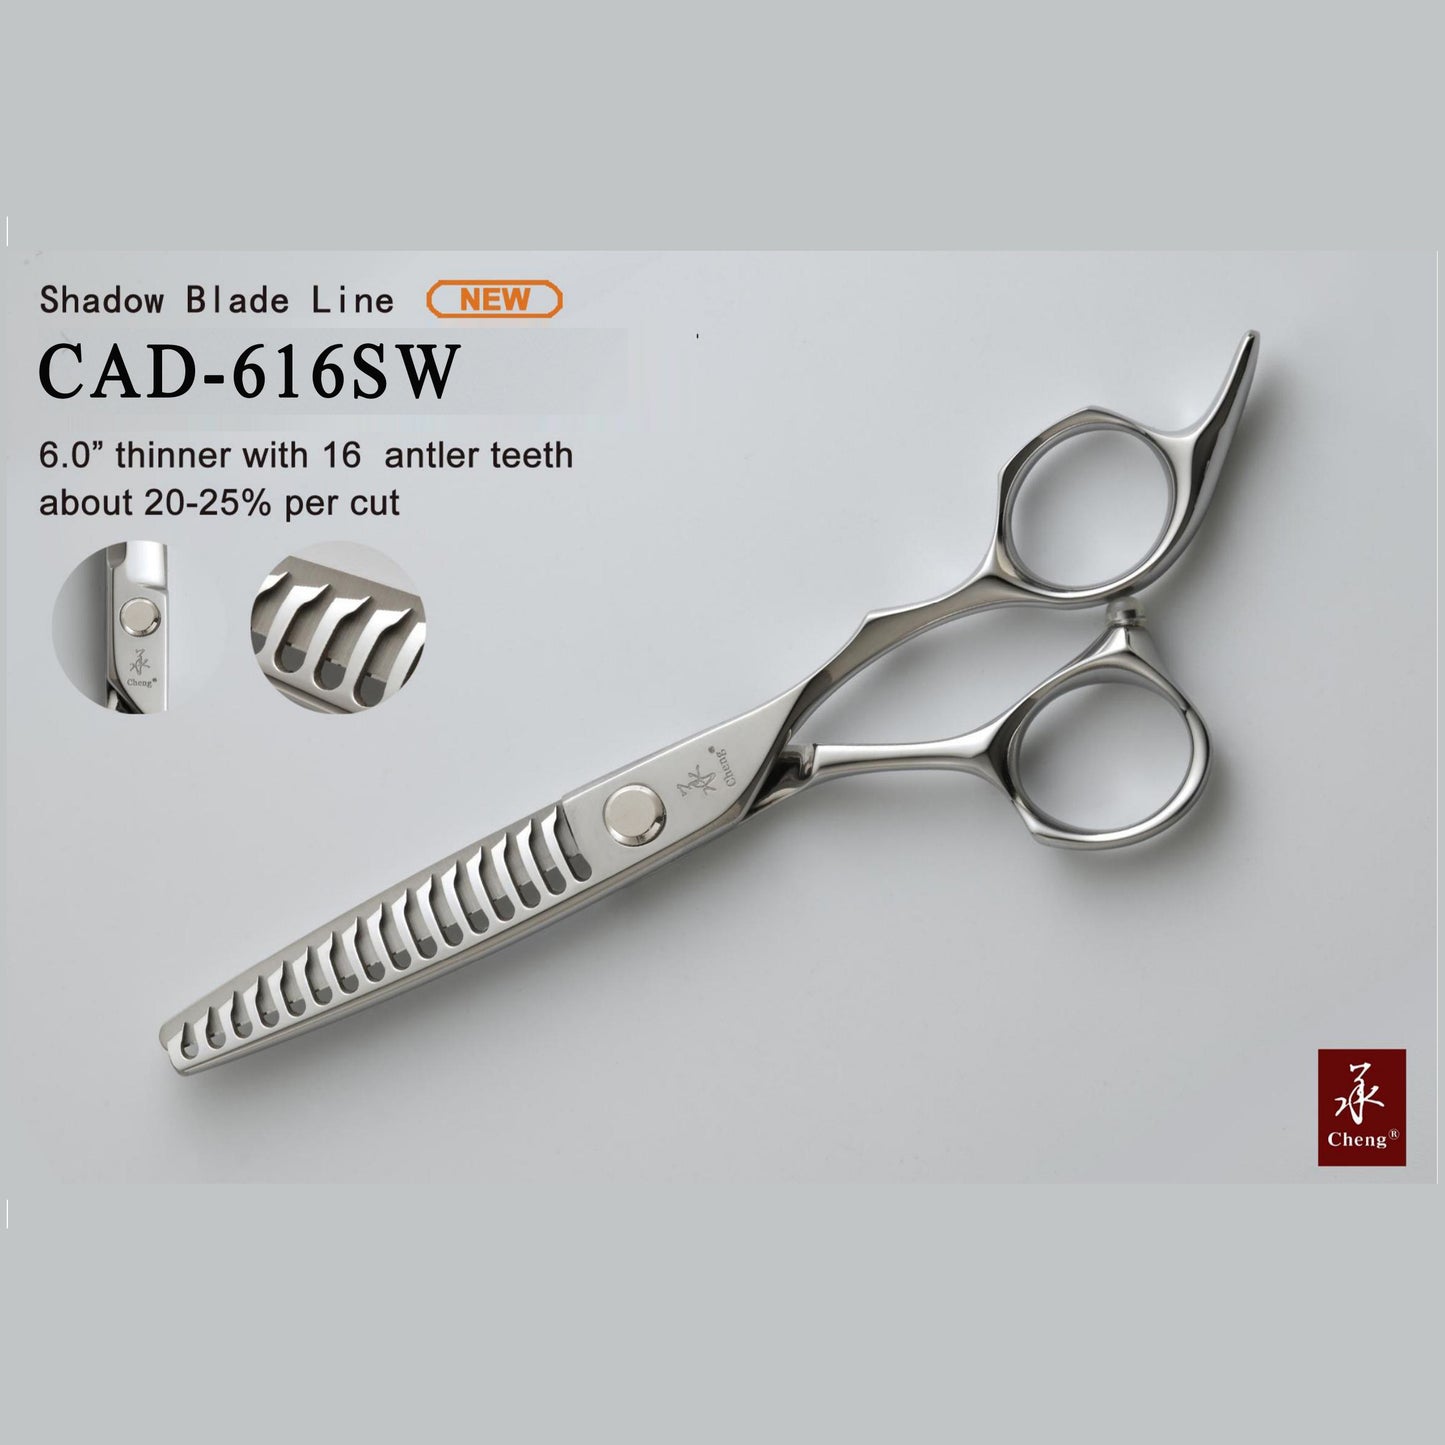 CHENG C-AAD-616SW Haarschere 6,0 Zoll New Handle Style Schere